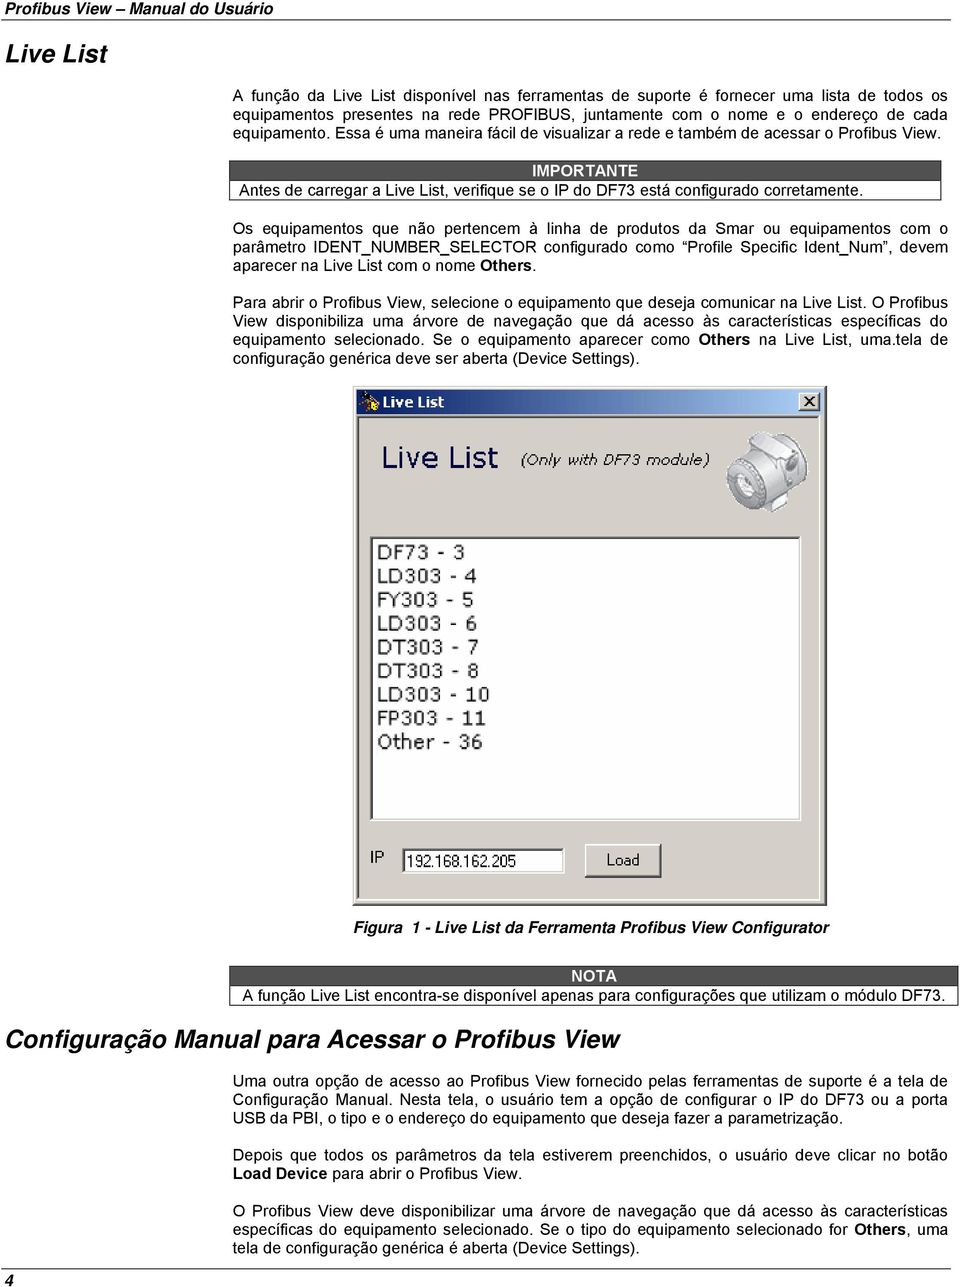 Os equipamentos que não pertencem à linha de produtos da Smar ou equipamentos com o parâmetro IDENT_NUMBER_SELECTOR configurado como Profile Specific Ident_Num, devem aparecer na Live List com o nome